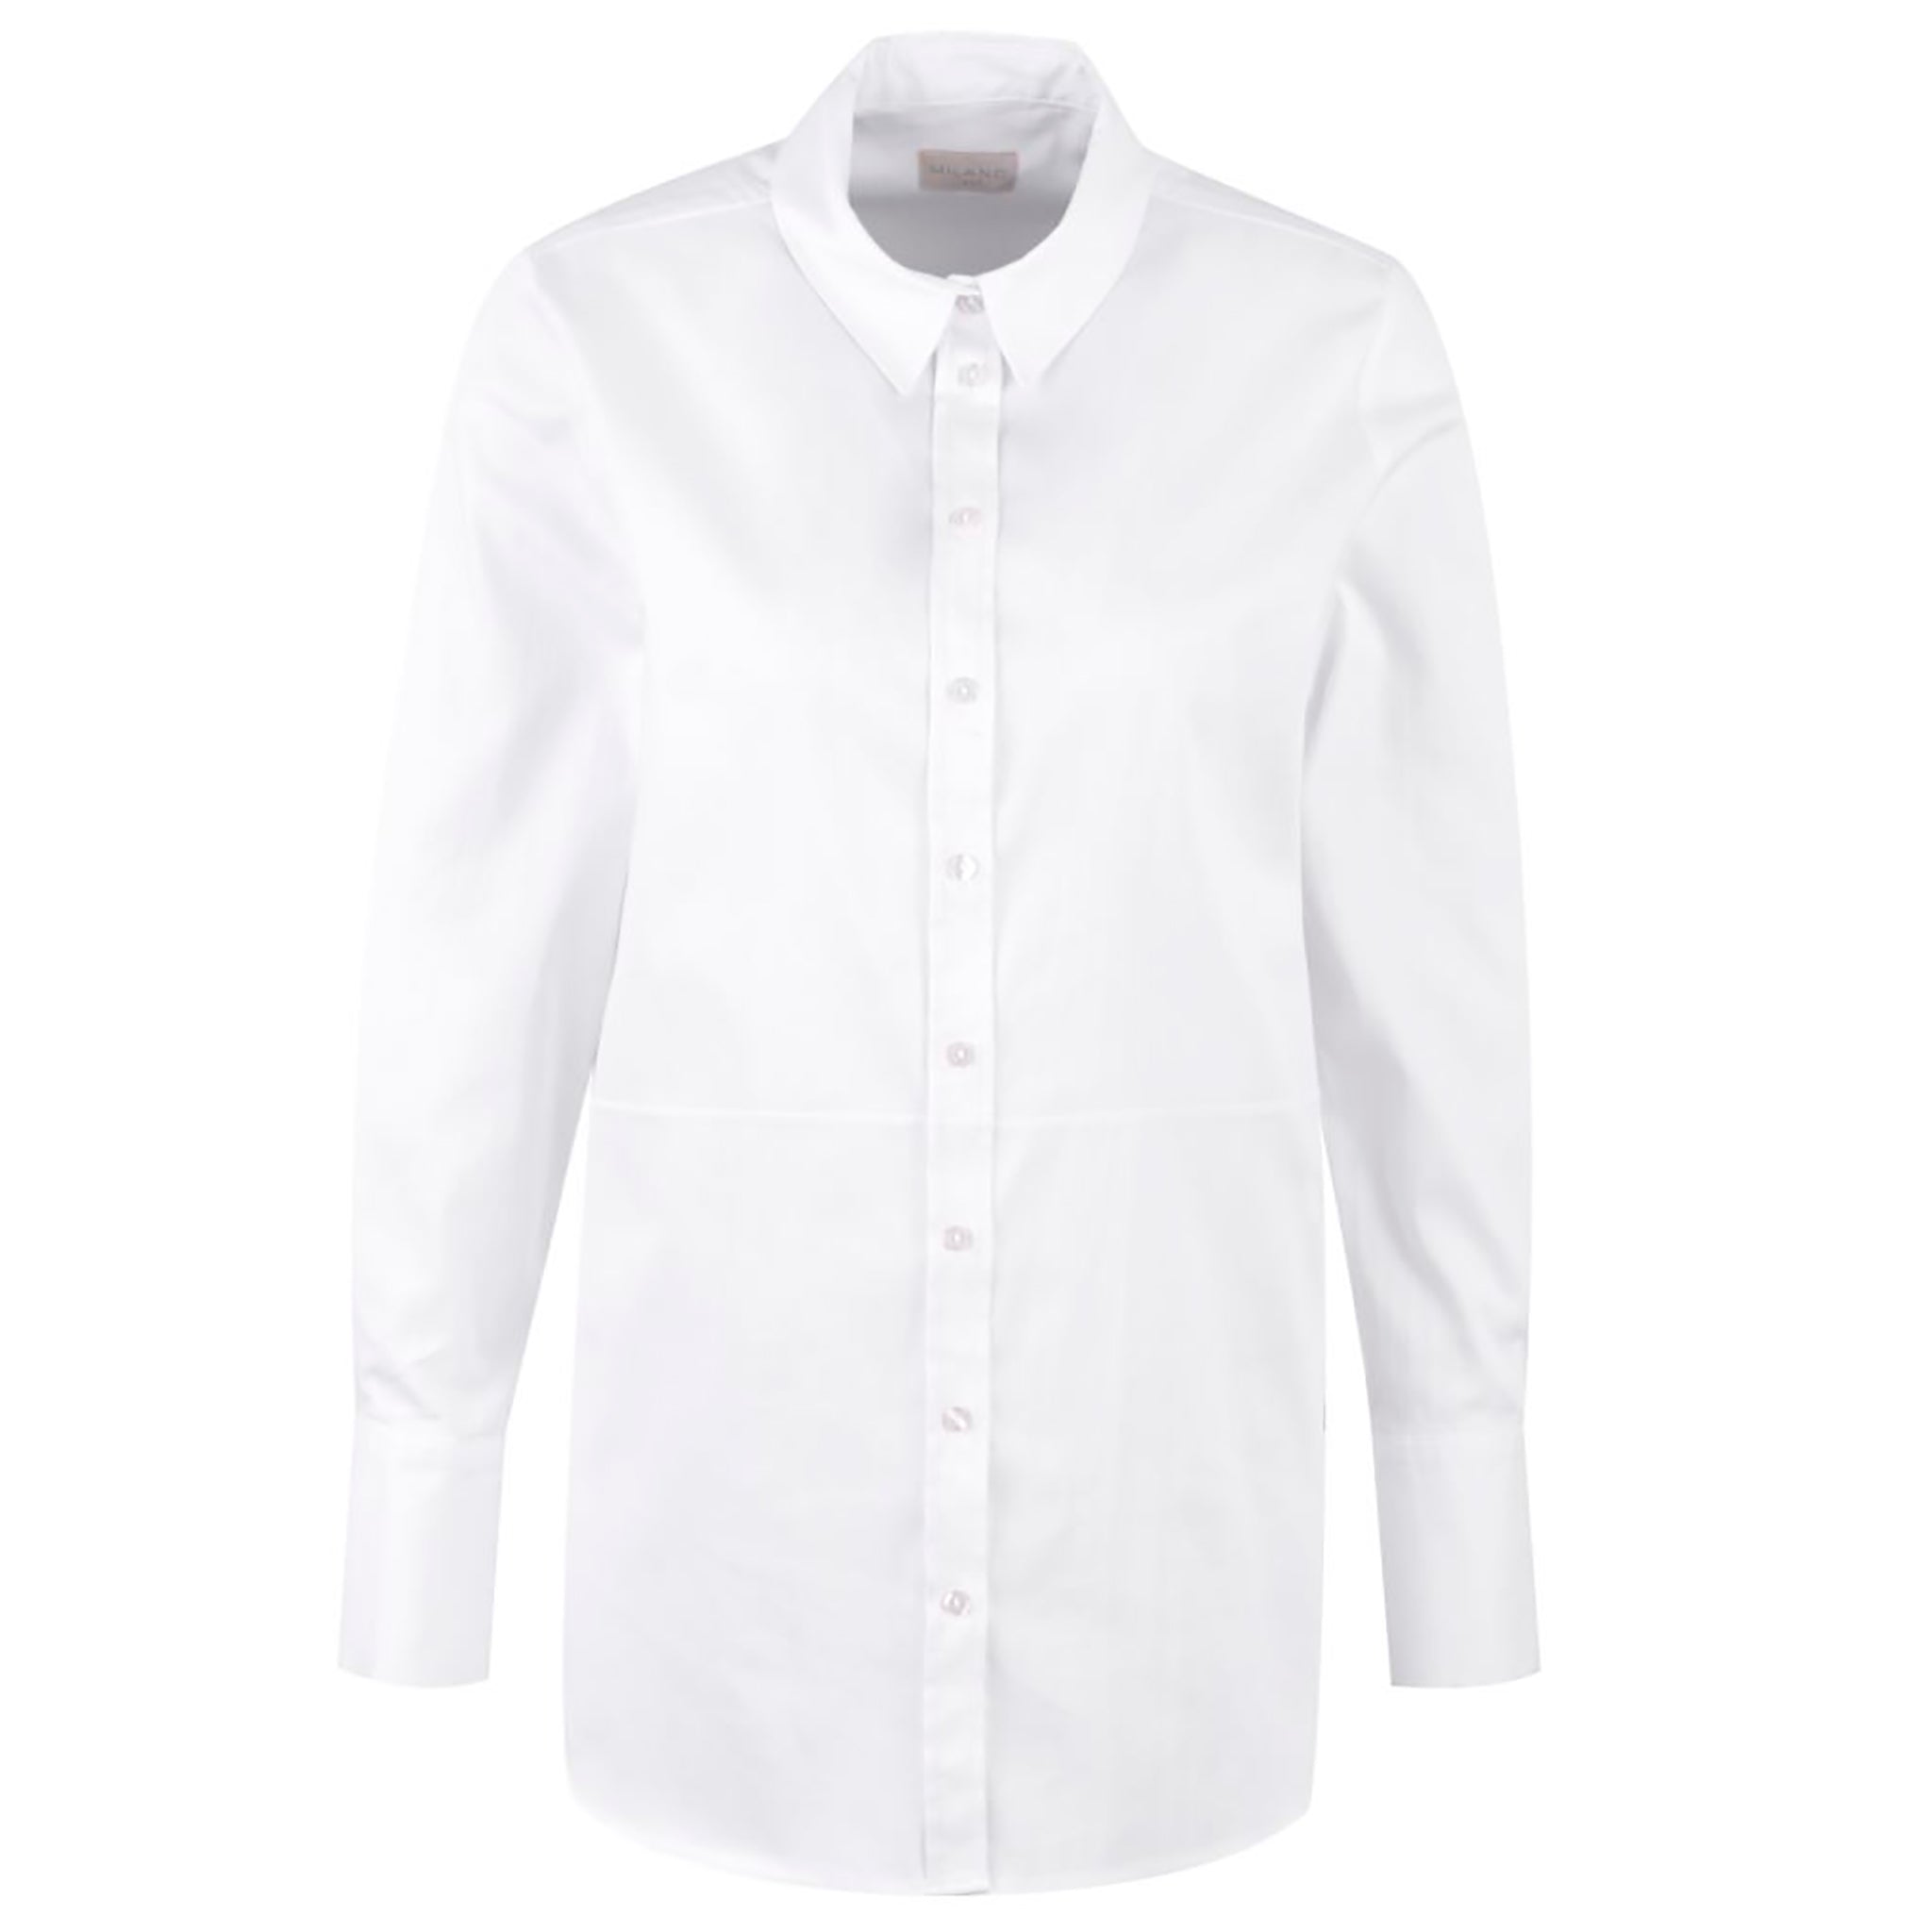 Milanon valkoinen, naisten paitapusero. Pitkät hihat ja leveät, käännettävät kalvosimet.